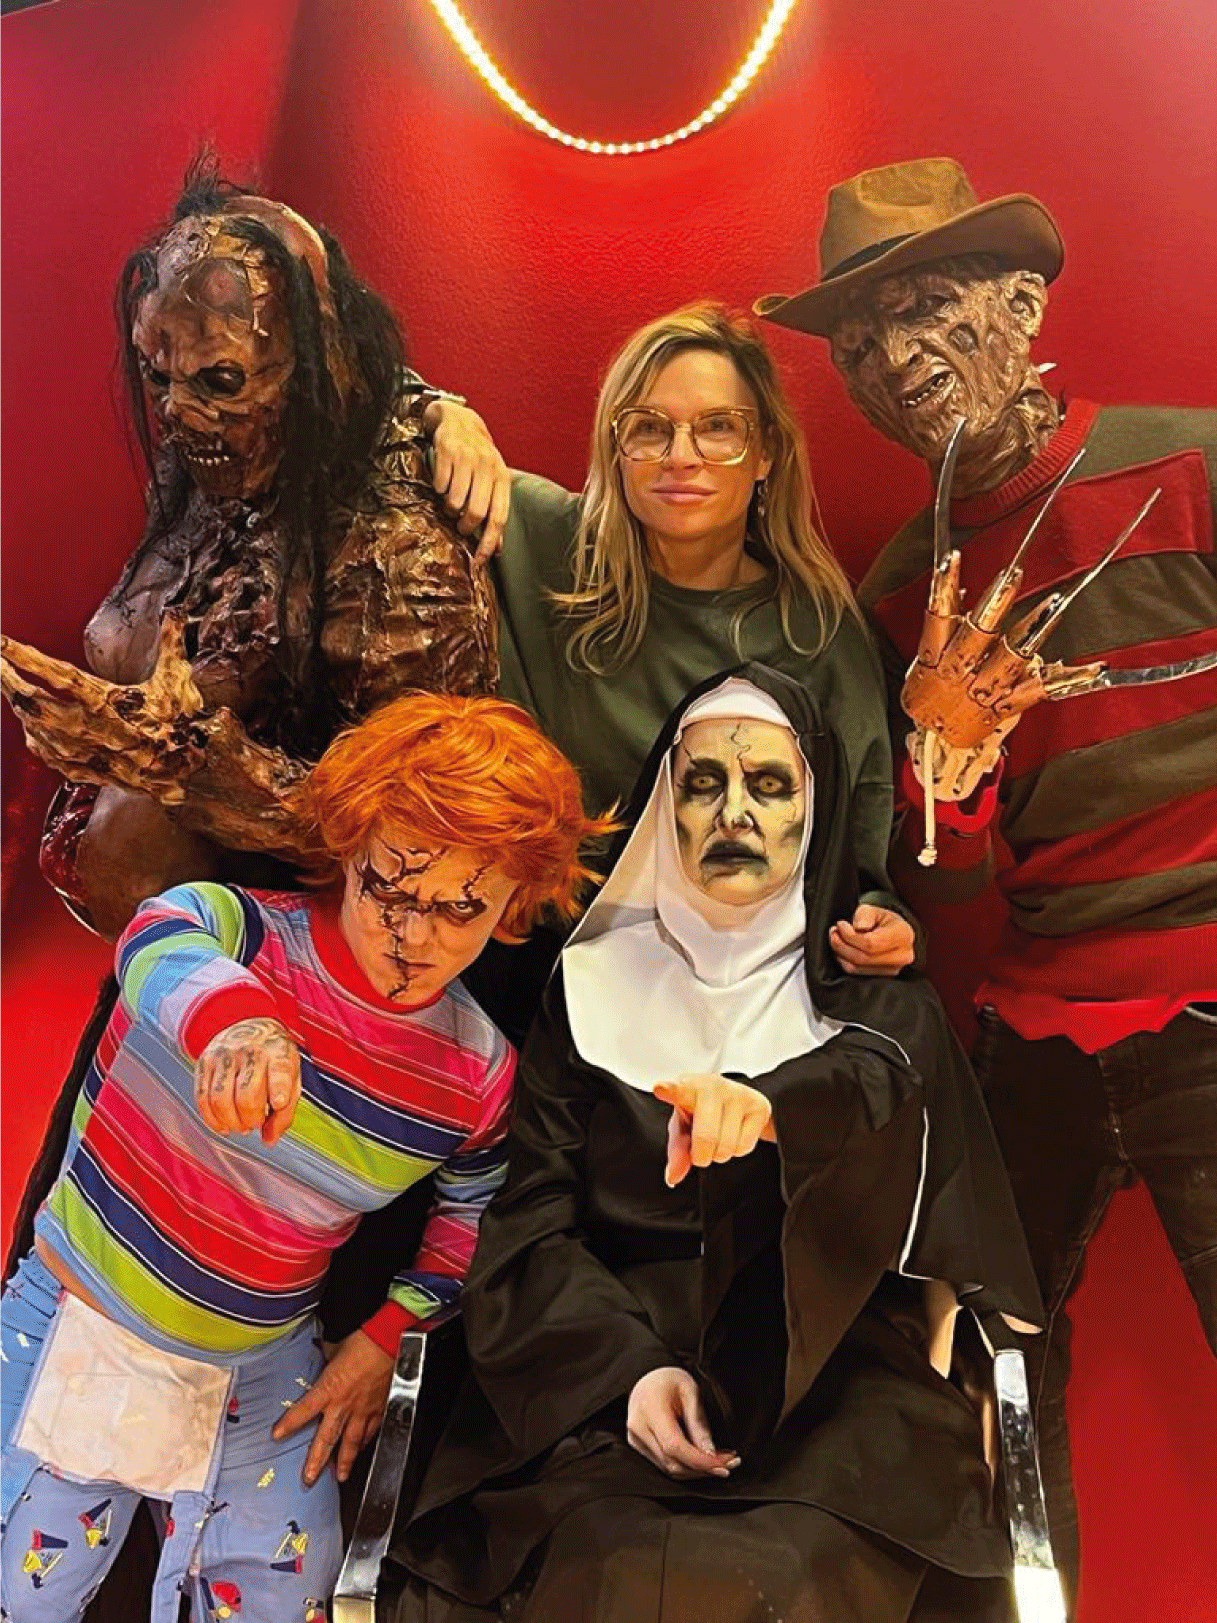 Comédiens "zombie, Freddy, Chucky, la nonne" ainsi que la maquilleuse